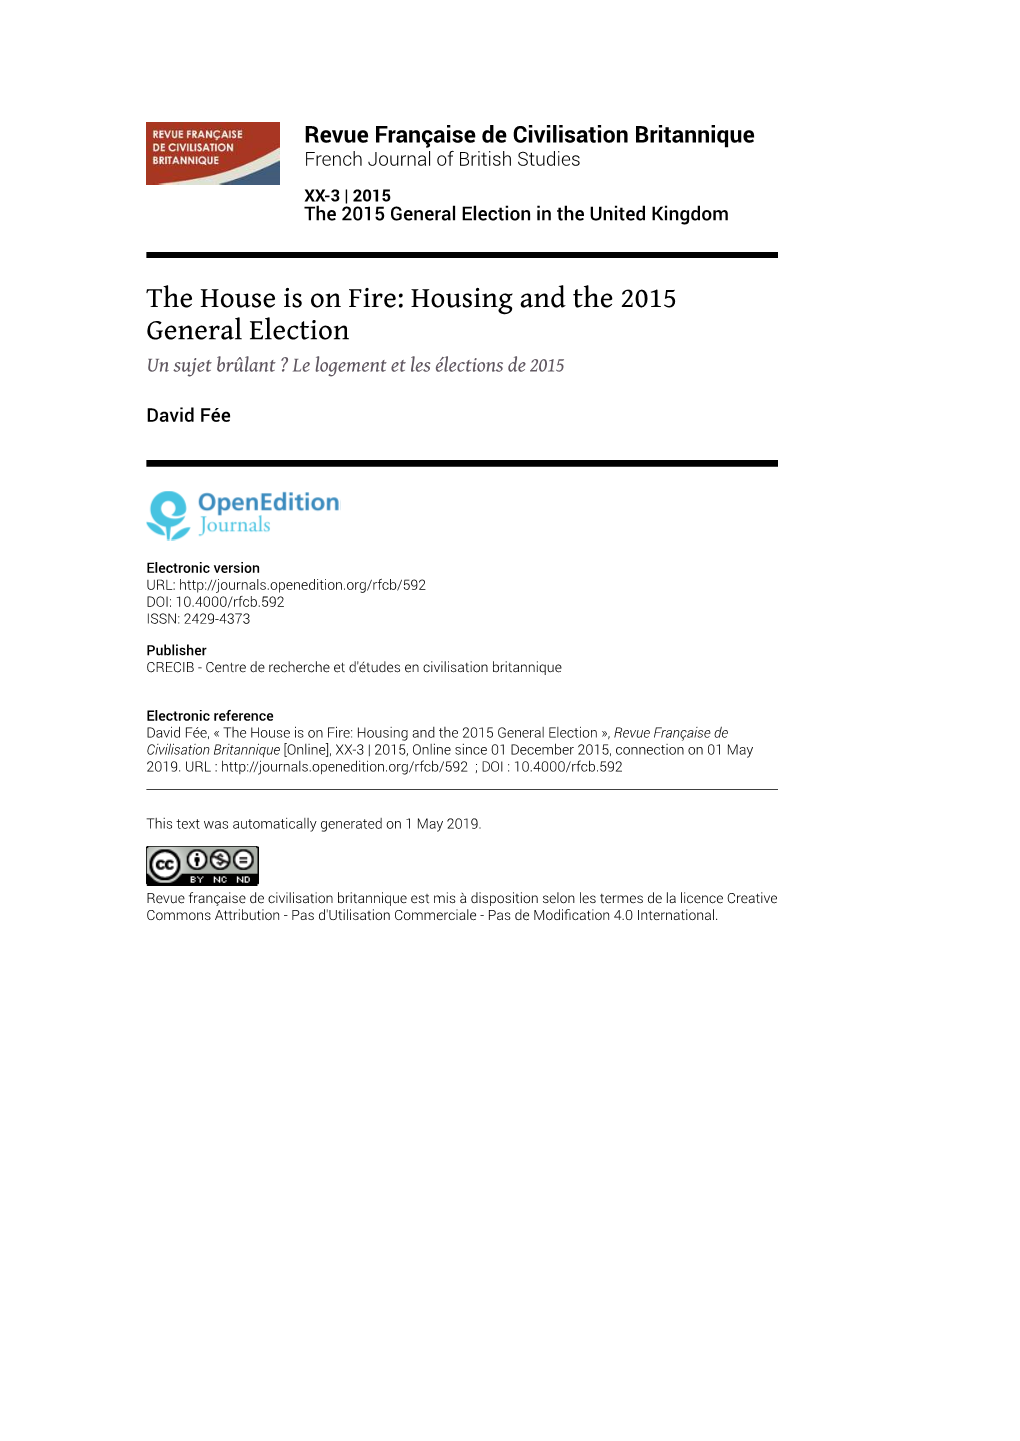 Revue Française De Civilisation Britannique, XX-3 | 2015 the House Is on Fire: Housing and the 2015 General Election 2